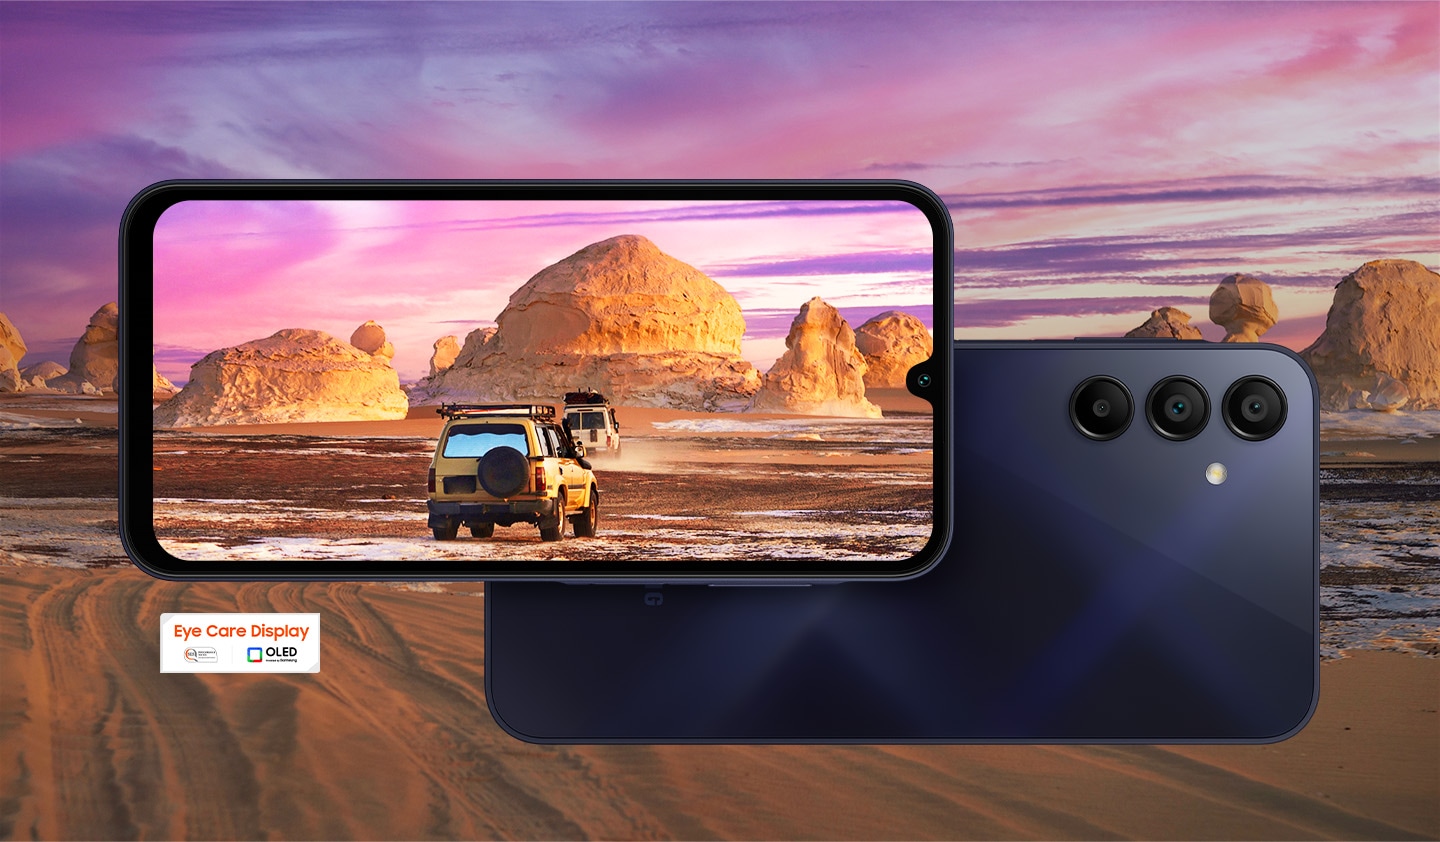 U pozadini je prikazan prekrasan pejzaž pustinje. U prvom planu su prikazana dva Galaxy A15 uređaja, pri čemu lijevi prikazuje ekran, a desni pozadinu. Pejzaž se preklapa sa ekranom uređaja sa leve strane i prikazuje dva kamiona koji voze u pustinju. U donjem lijevom kutu prikazan je logotip Eye Care Display.